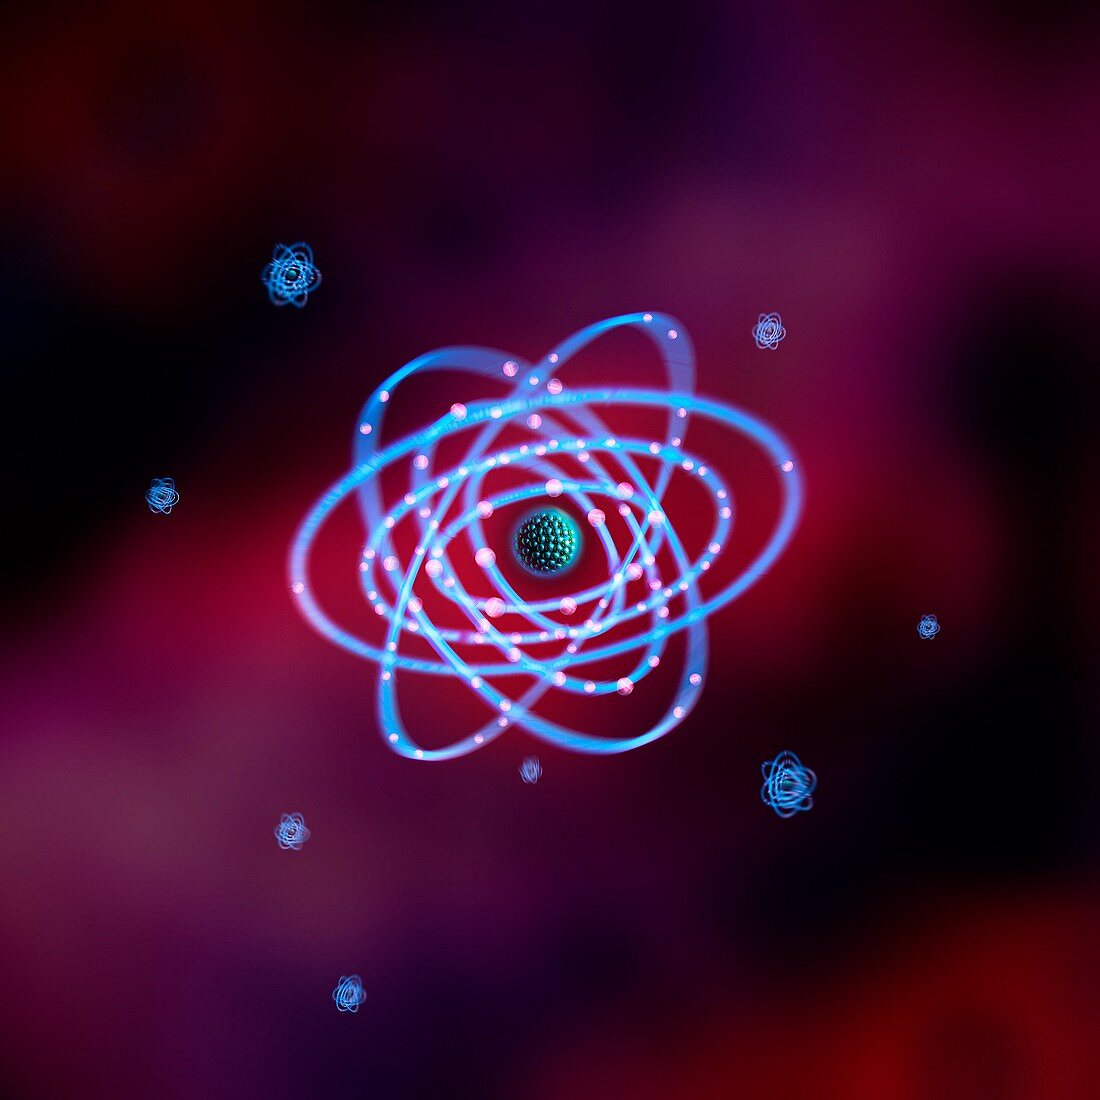 Thorium atom,conceptual image